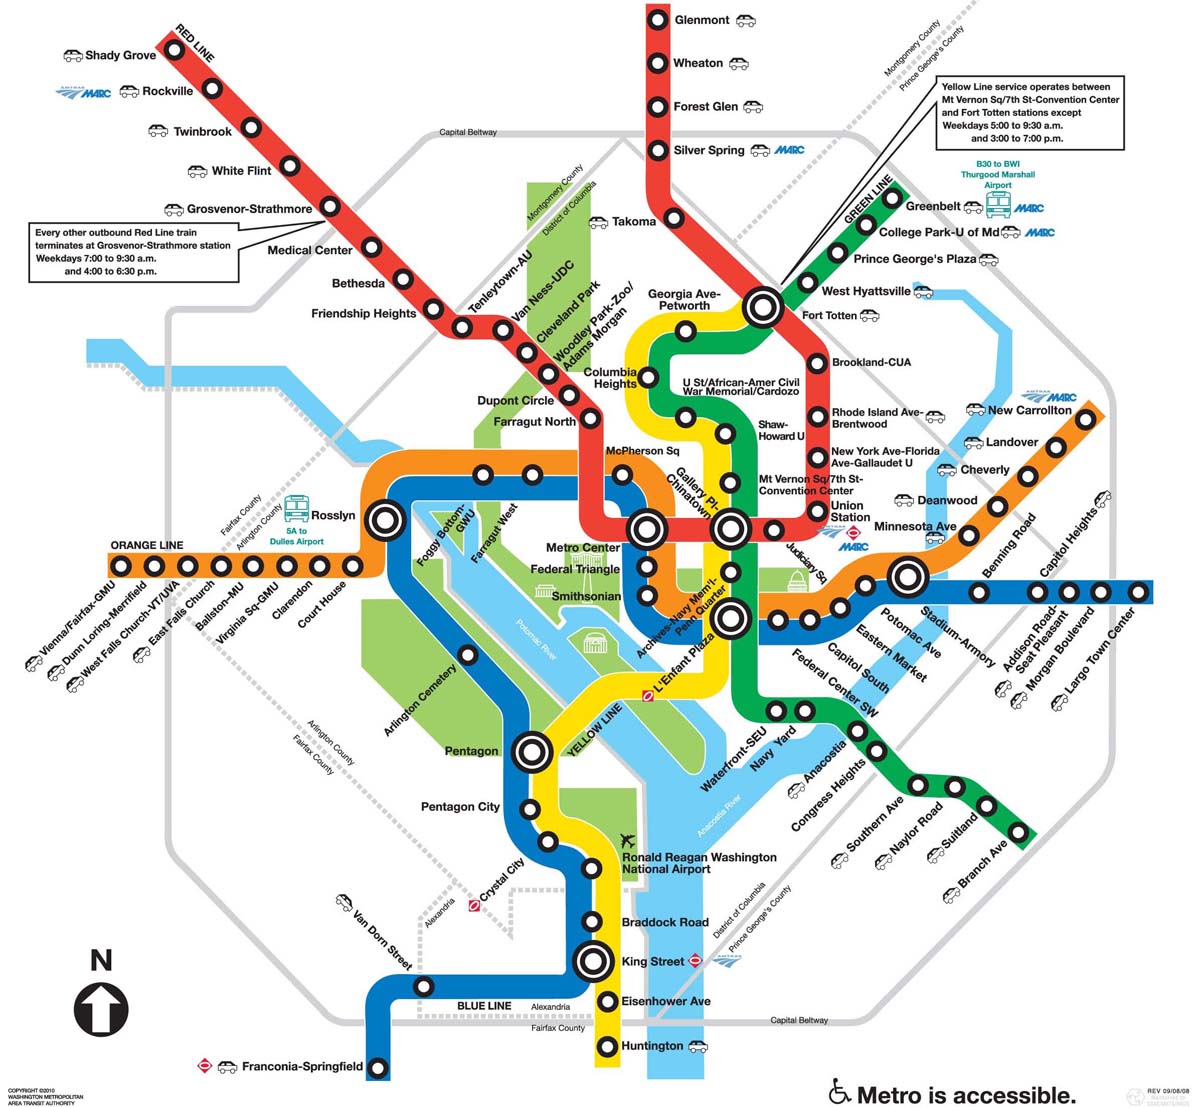 metro transit